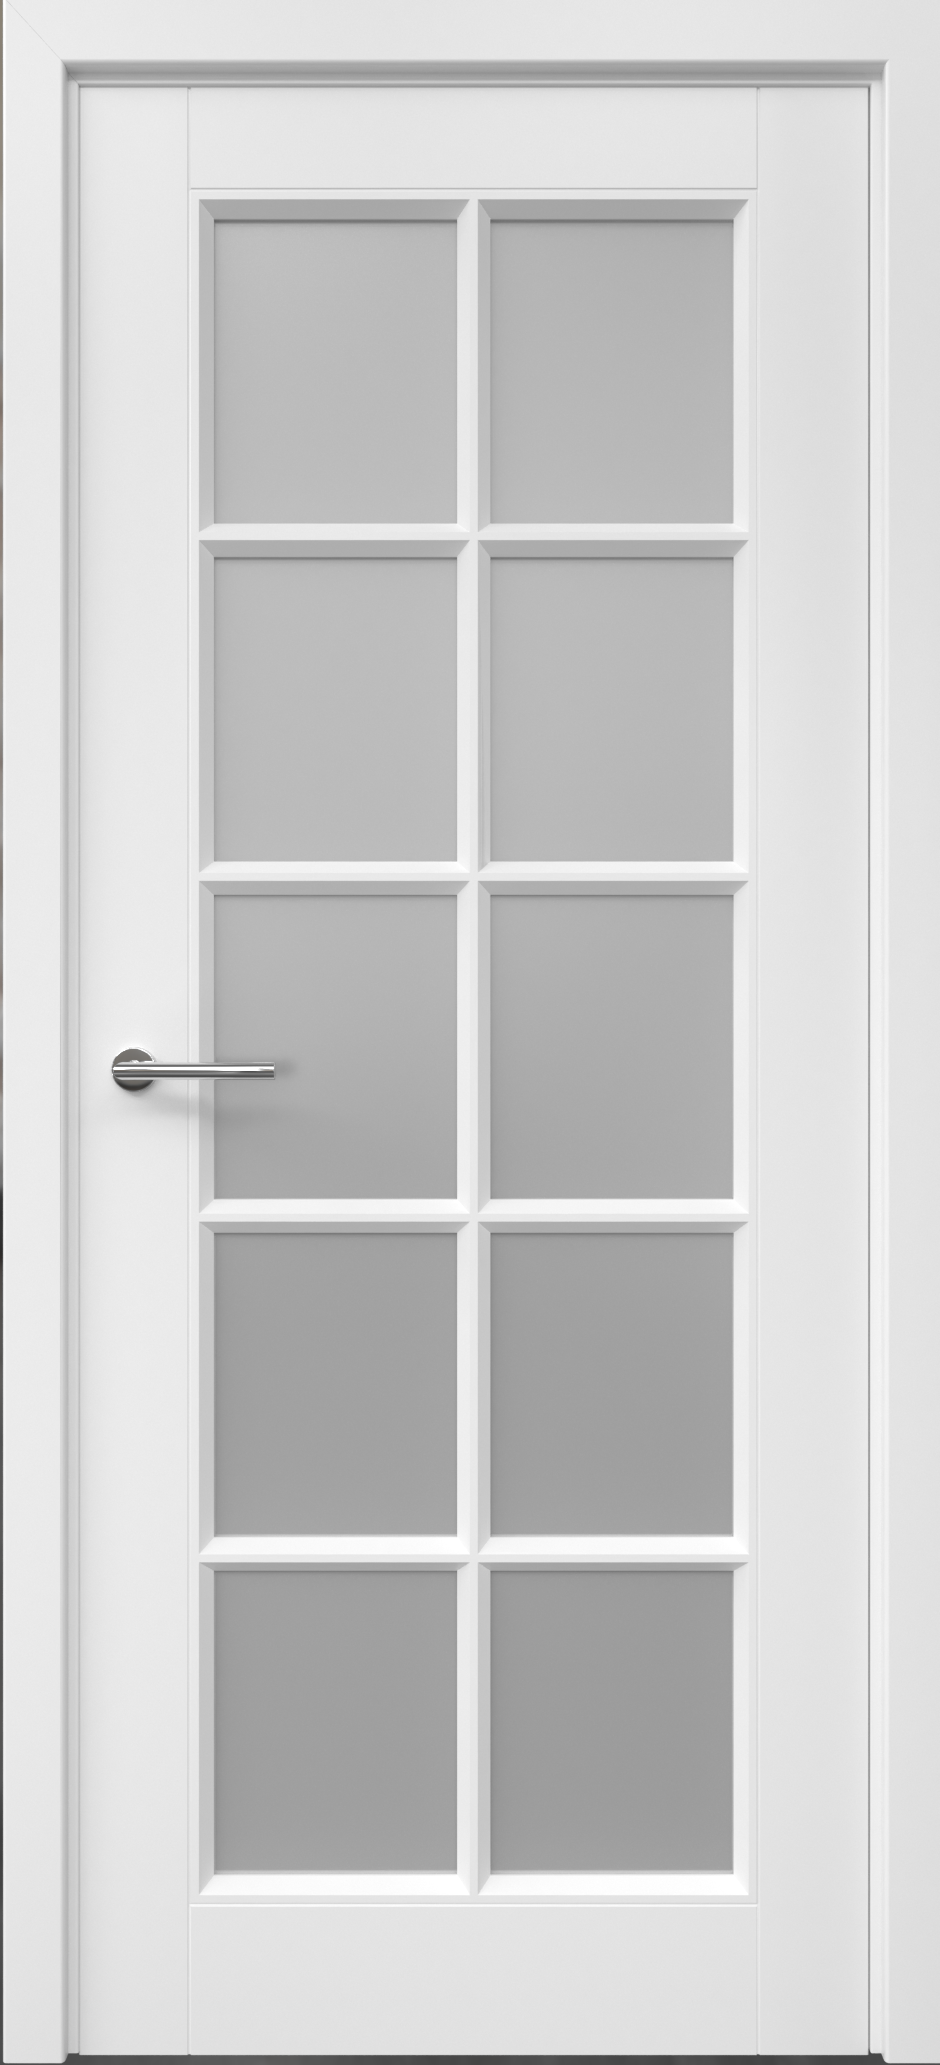 Межкомнатная дверь Классика-5